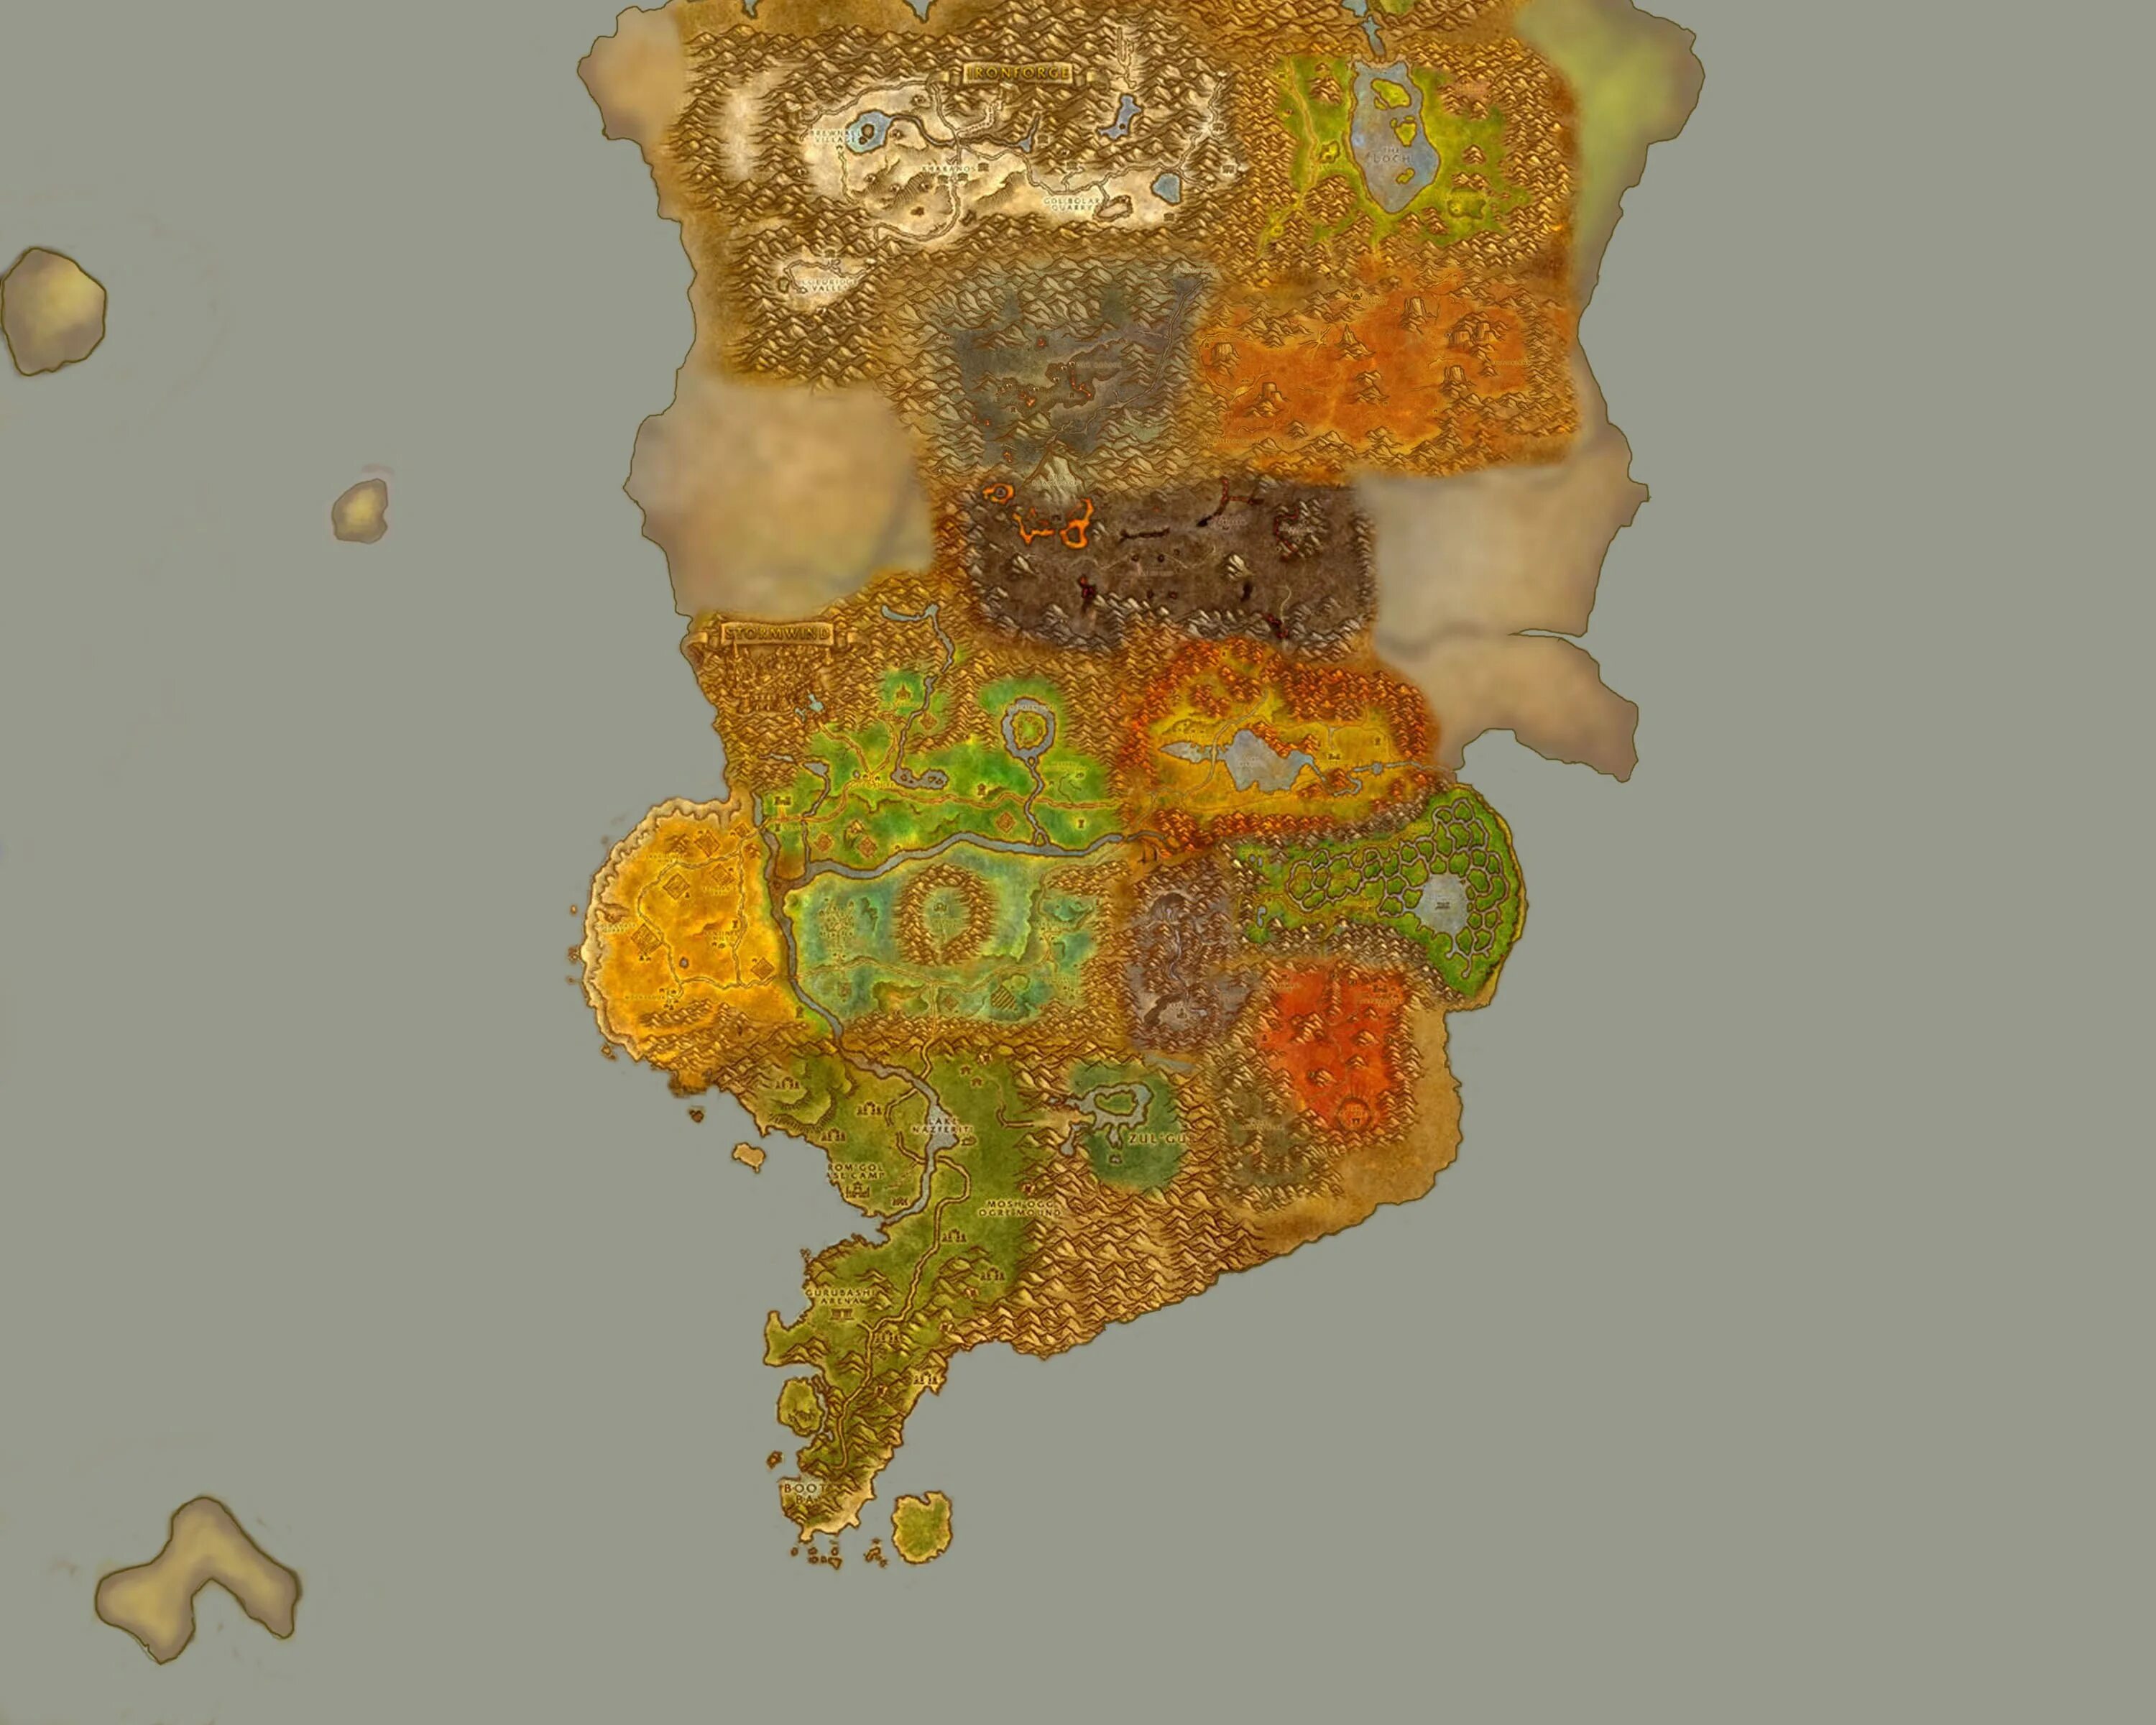 Карта восточных королевств wow. World of Warcraft карта восточных королевств. Карта восточных королевств 3.3.5. Карта ВОВ 3.3.5 восточные королевства. Где качаться орда